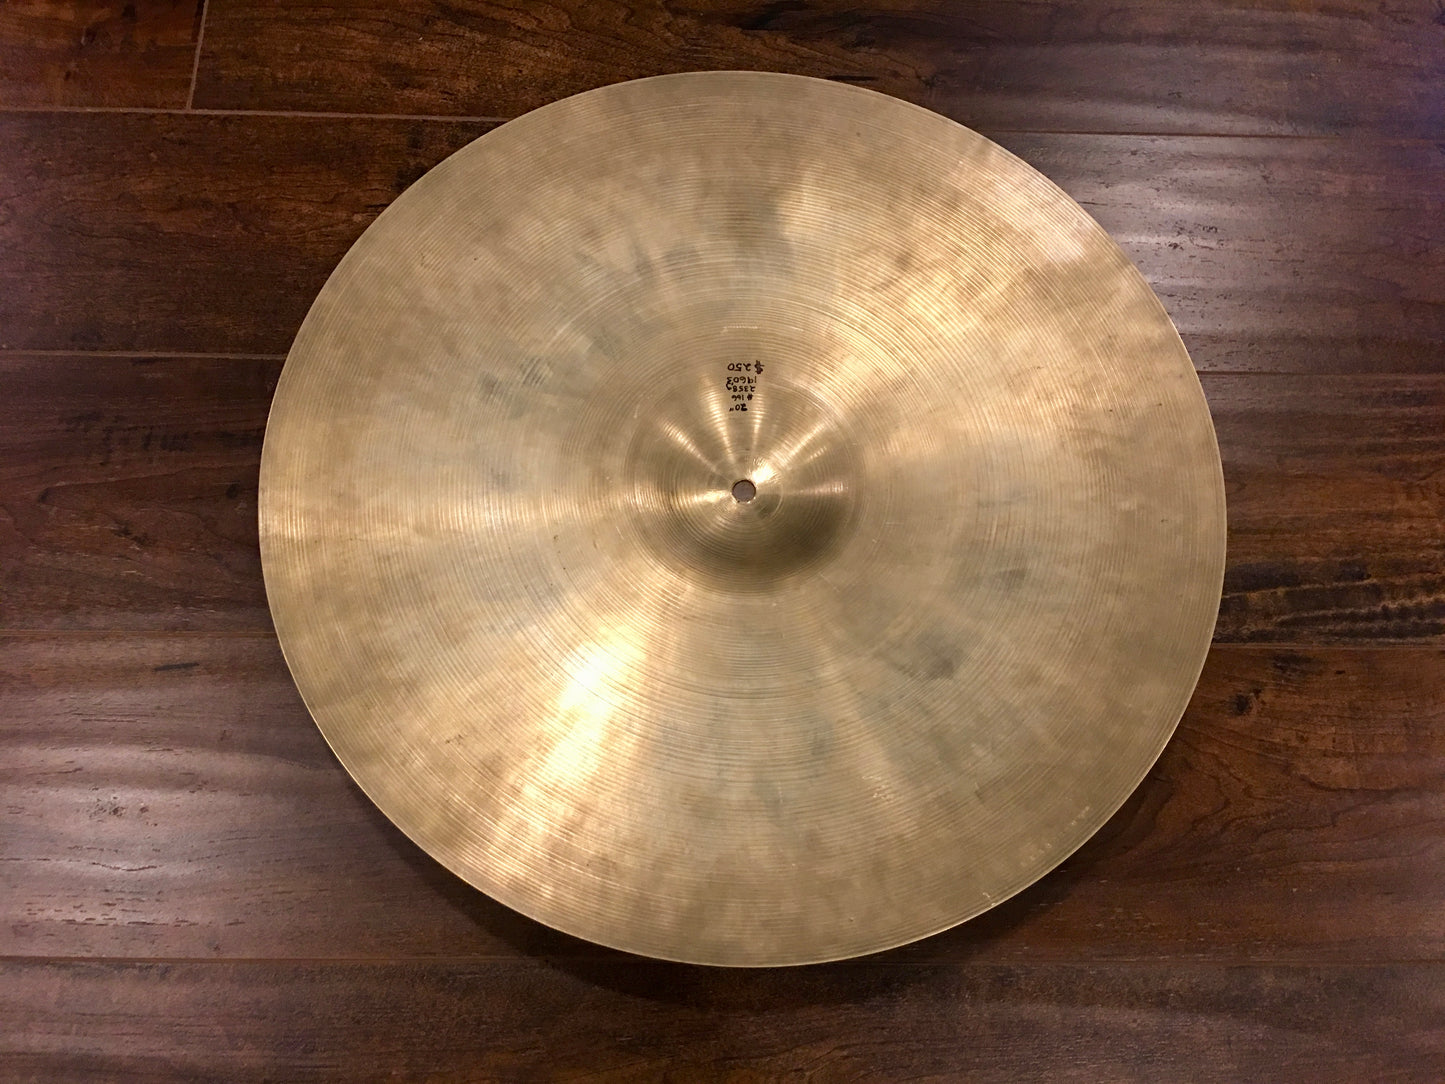 20" Zildjian A 1960's Ride Cymbal 2358g #166